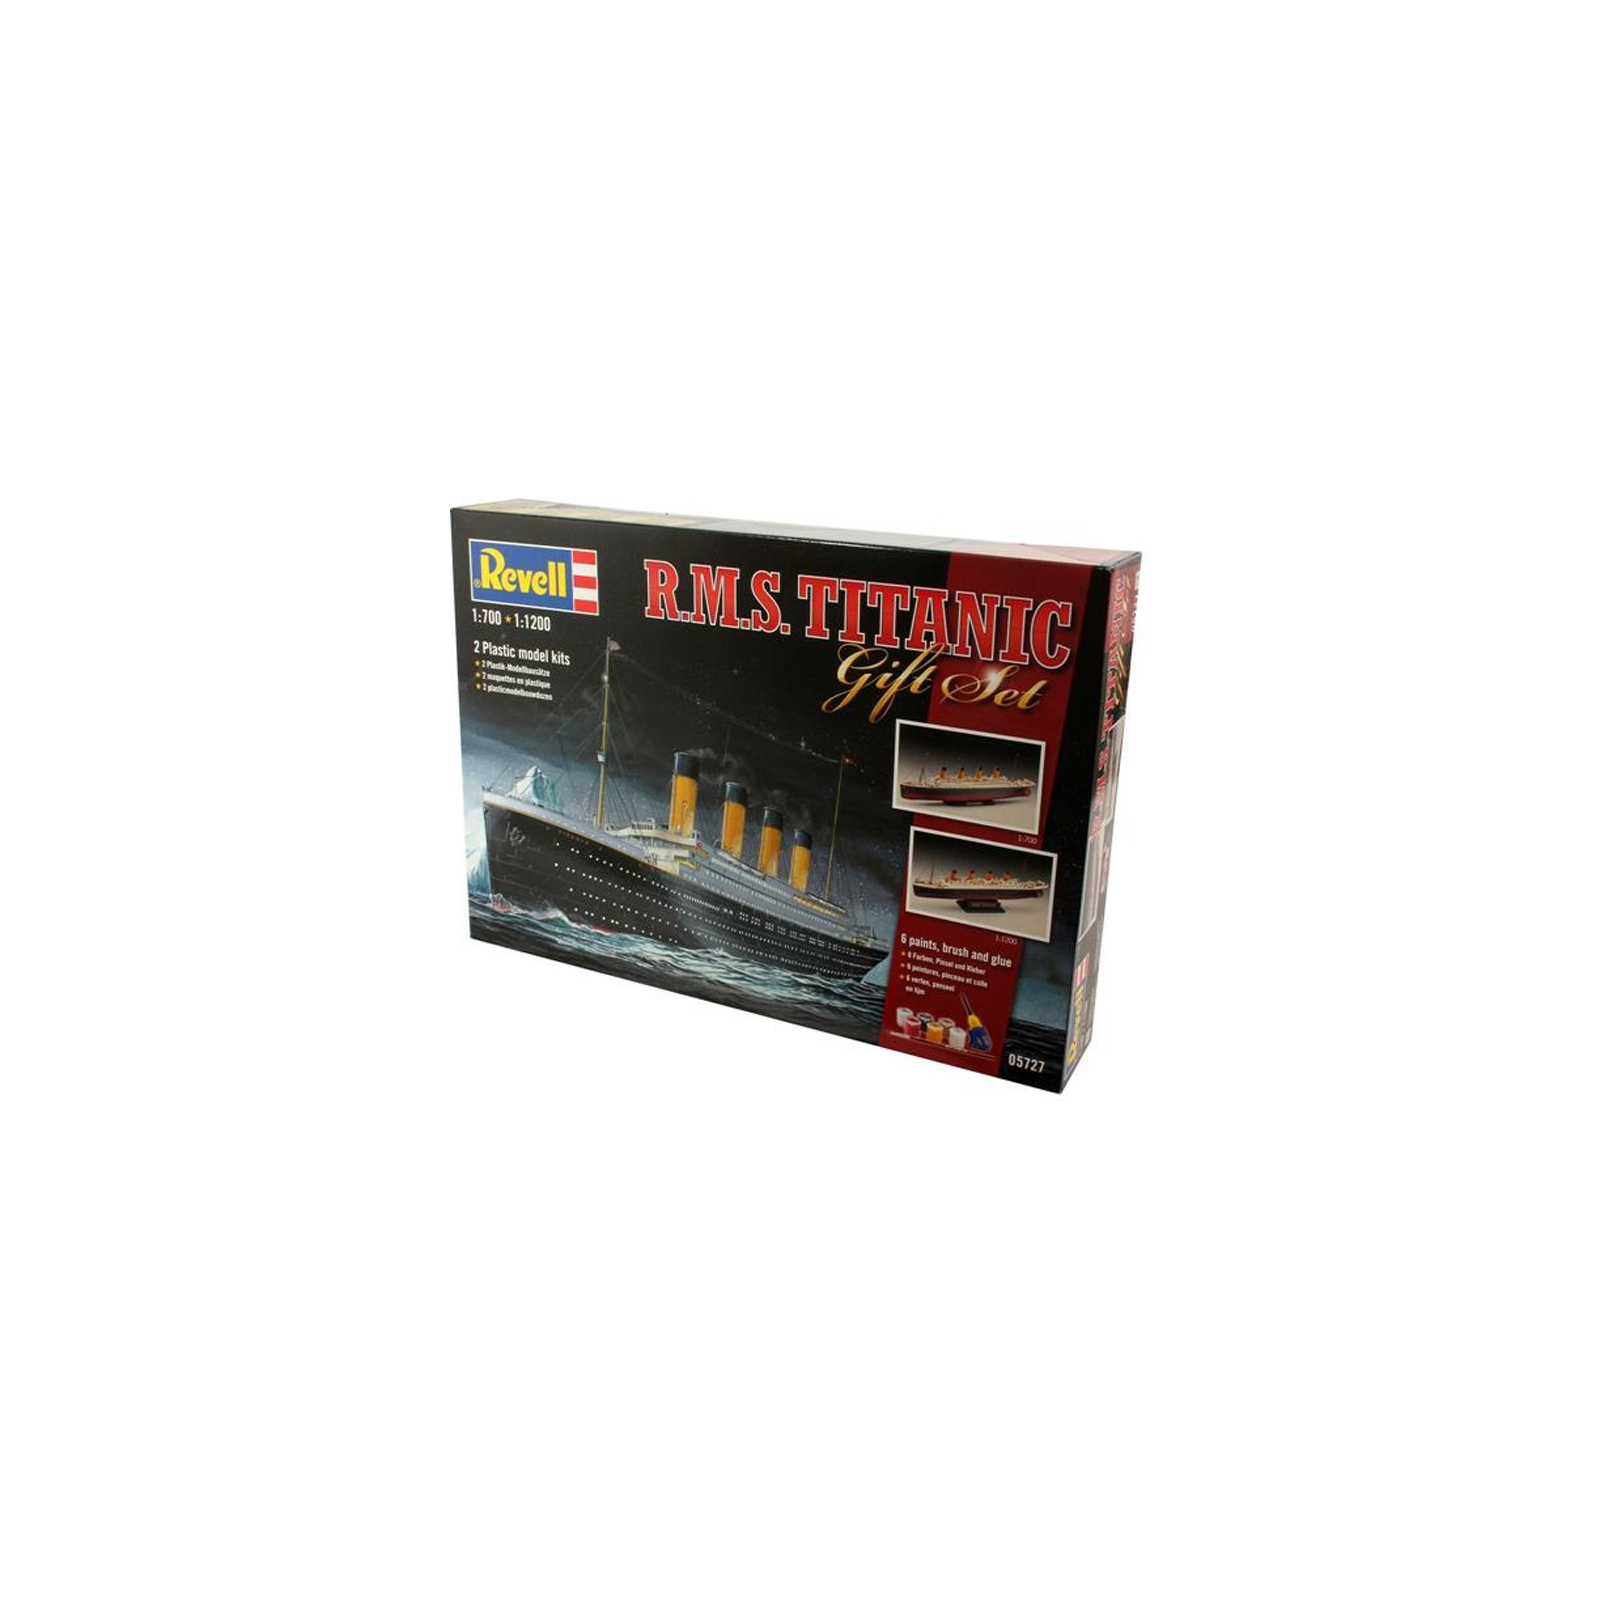 Сборная модель Revell Корабль Титаник подарочный набор уровень 4 1:700 и 1:1200 уровень 4 1:700 и 1:1200 (RVL-05727)